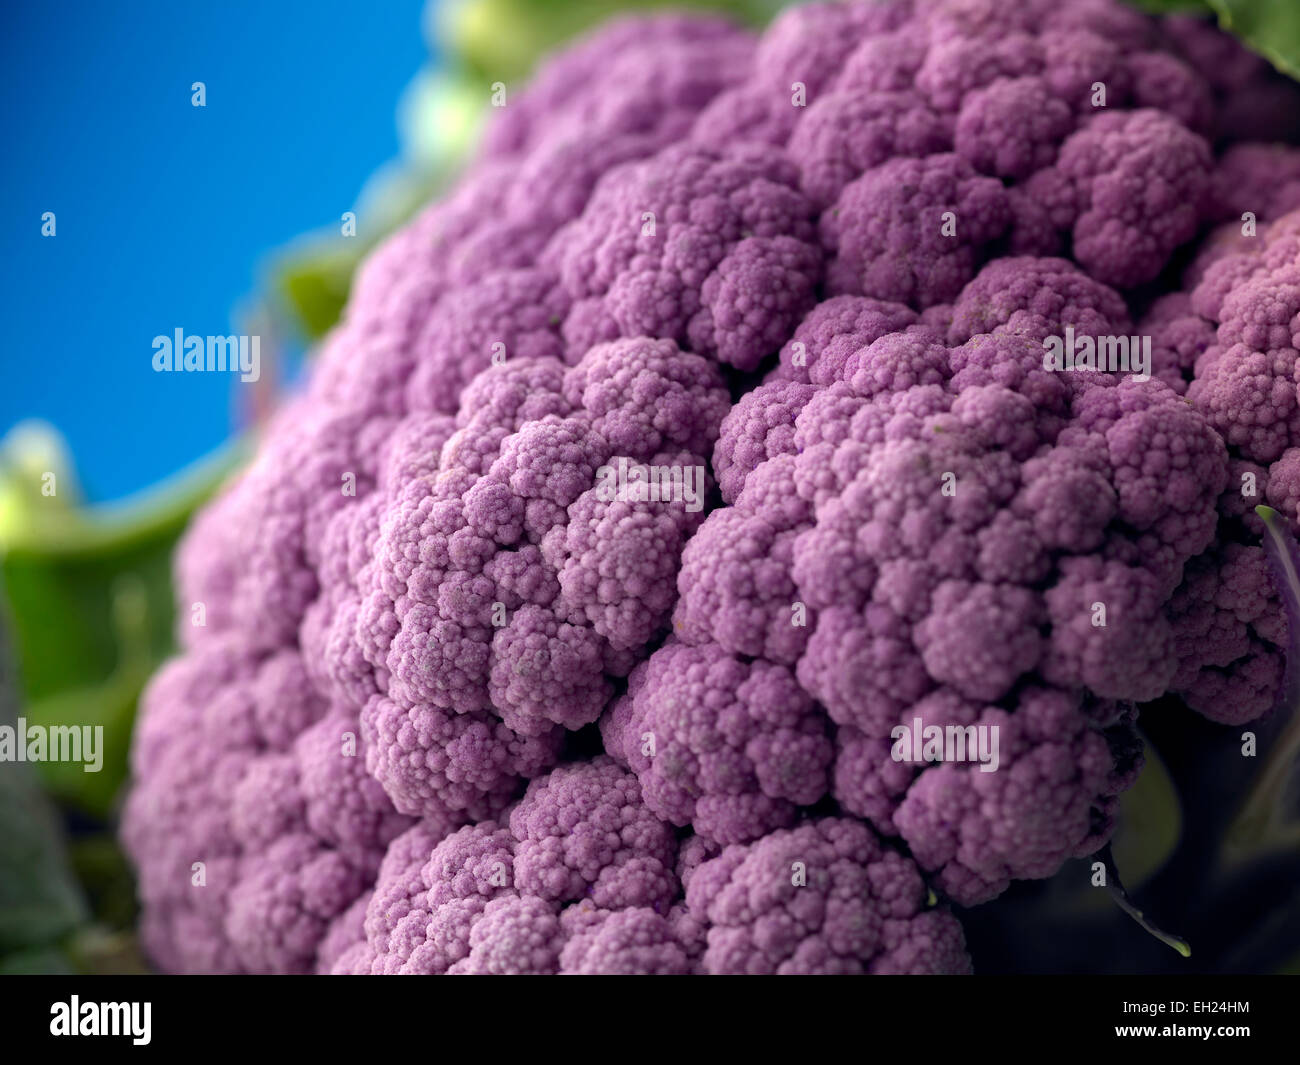 purple cauliflower Stock Photo